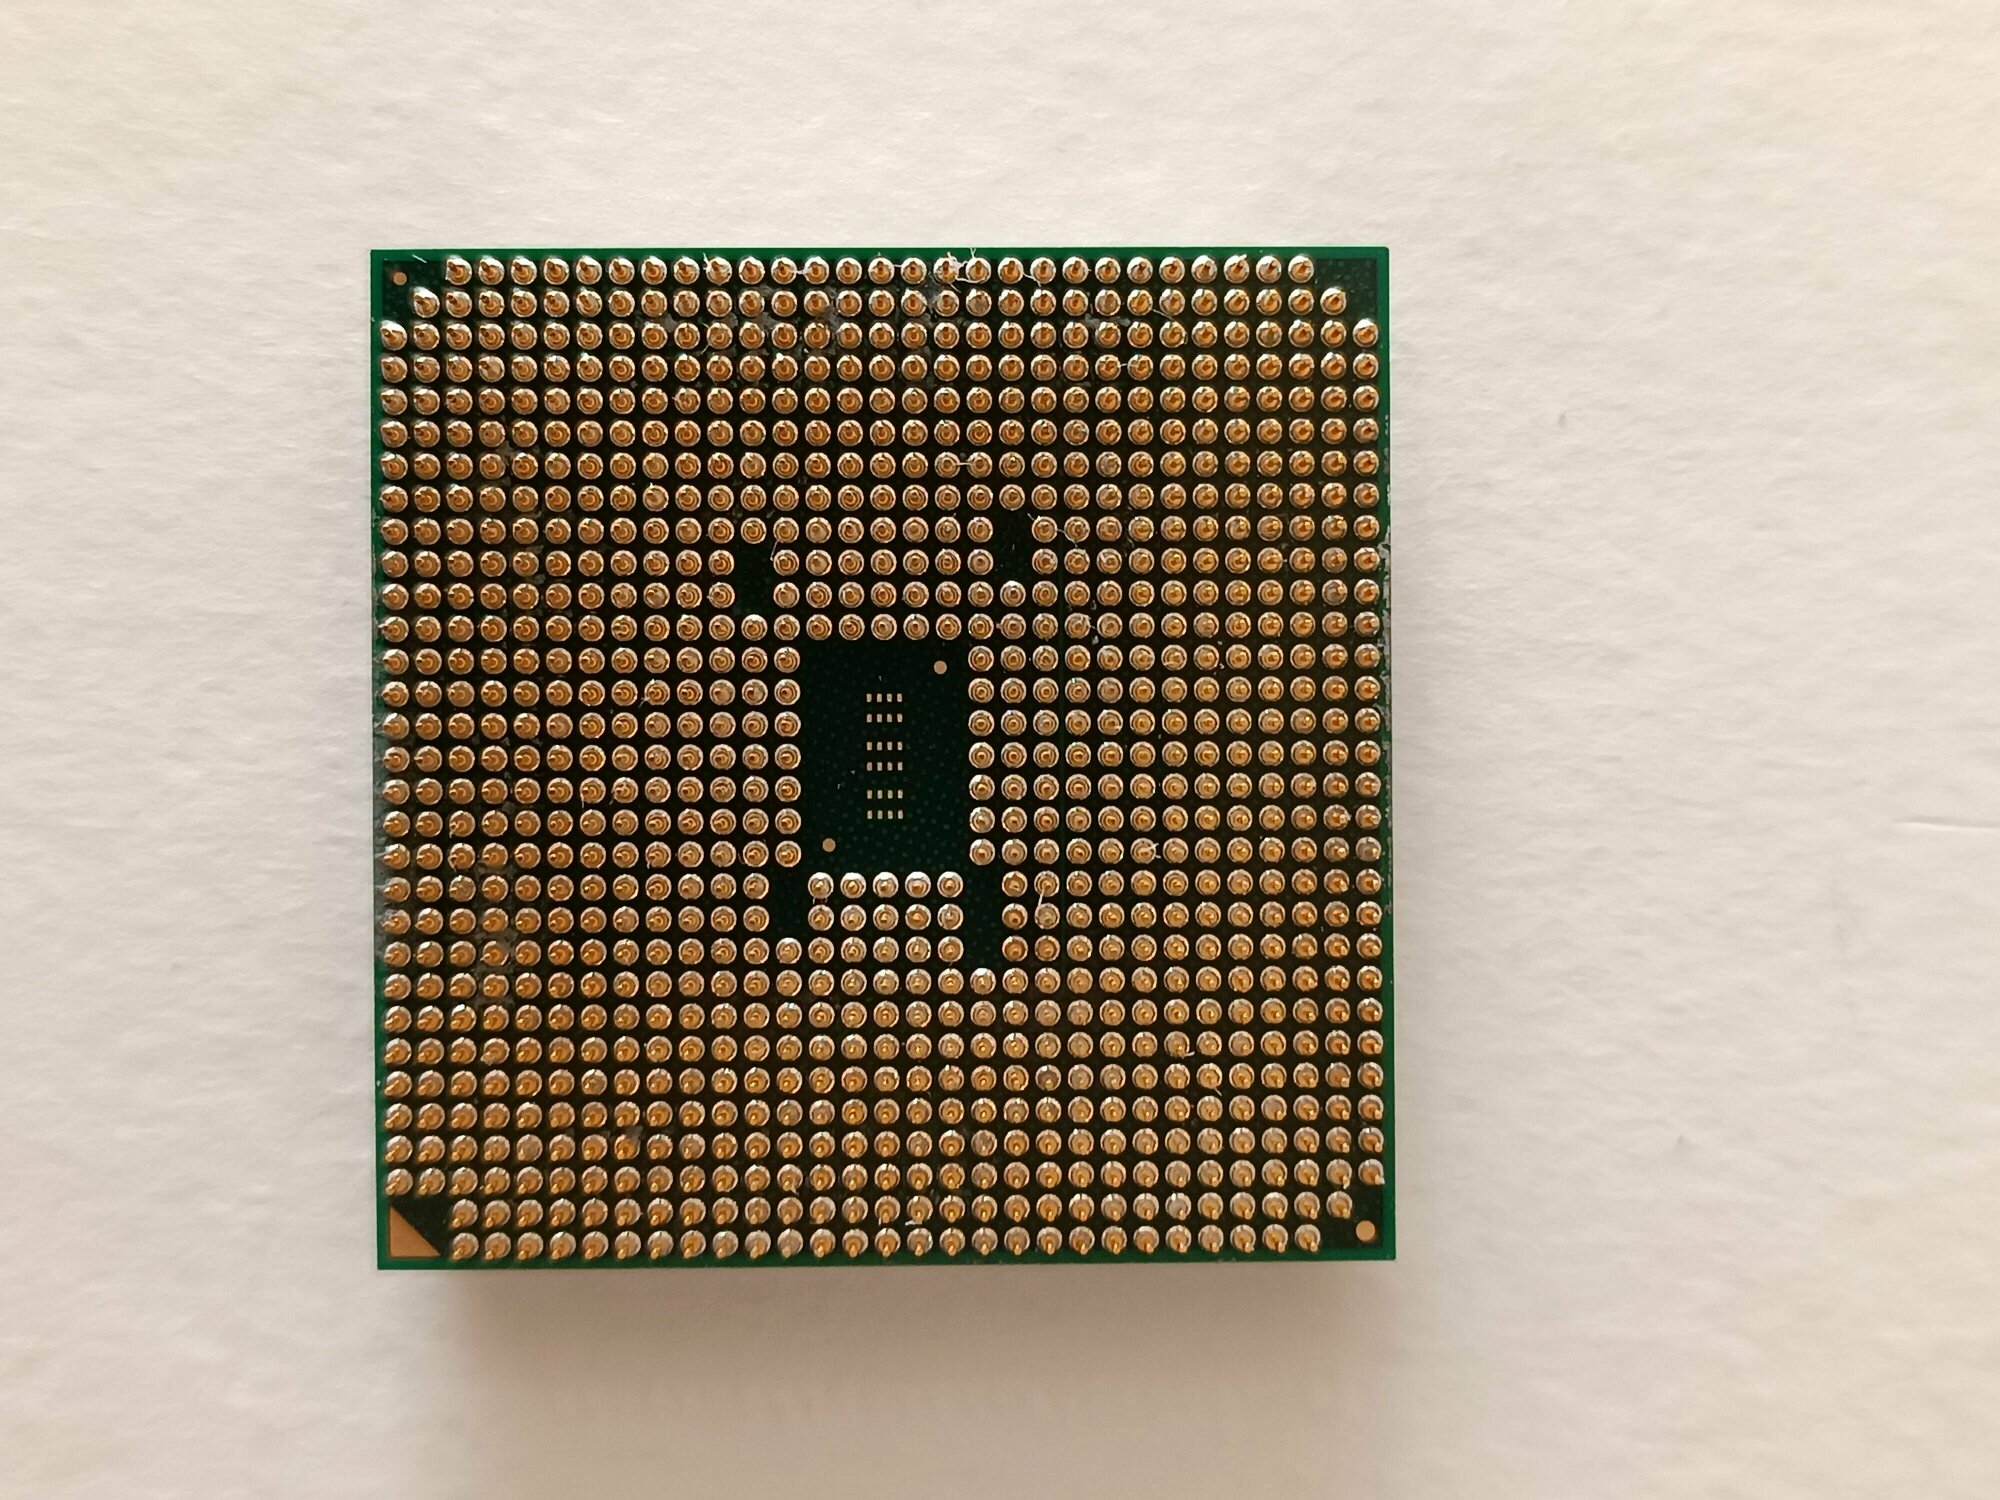 Процессор AMD A10-5800K Trinity FM2 4 x 3800 МГц